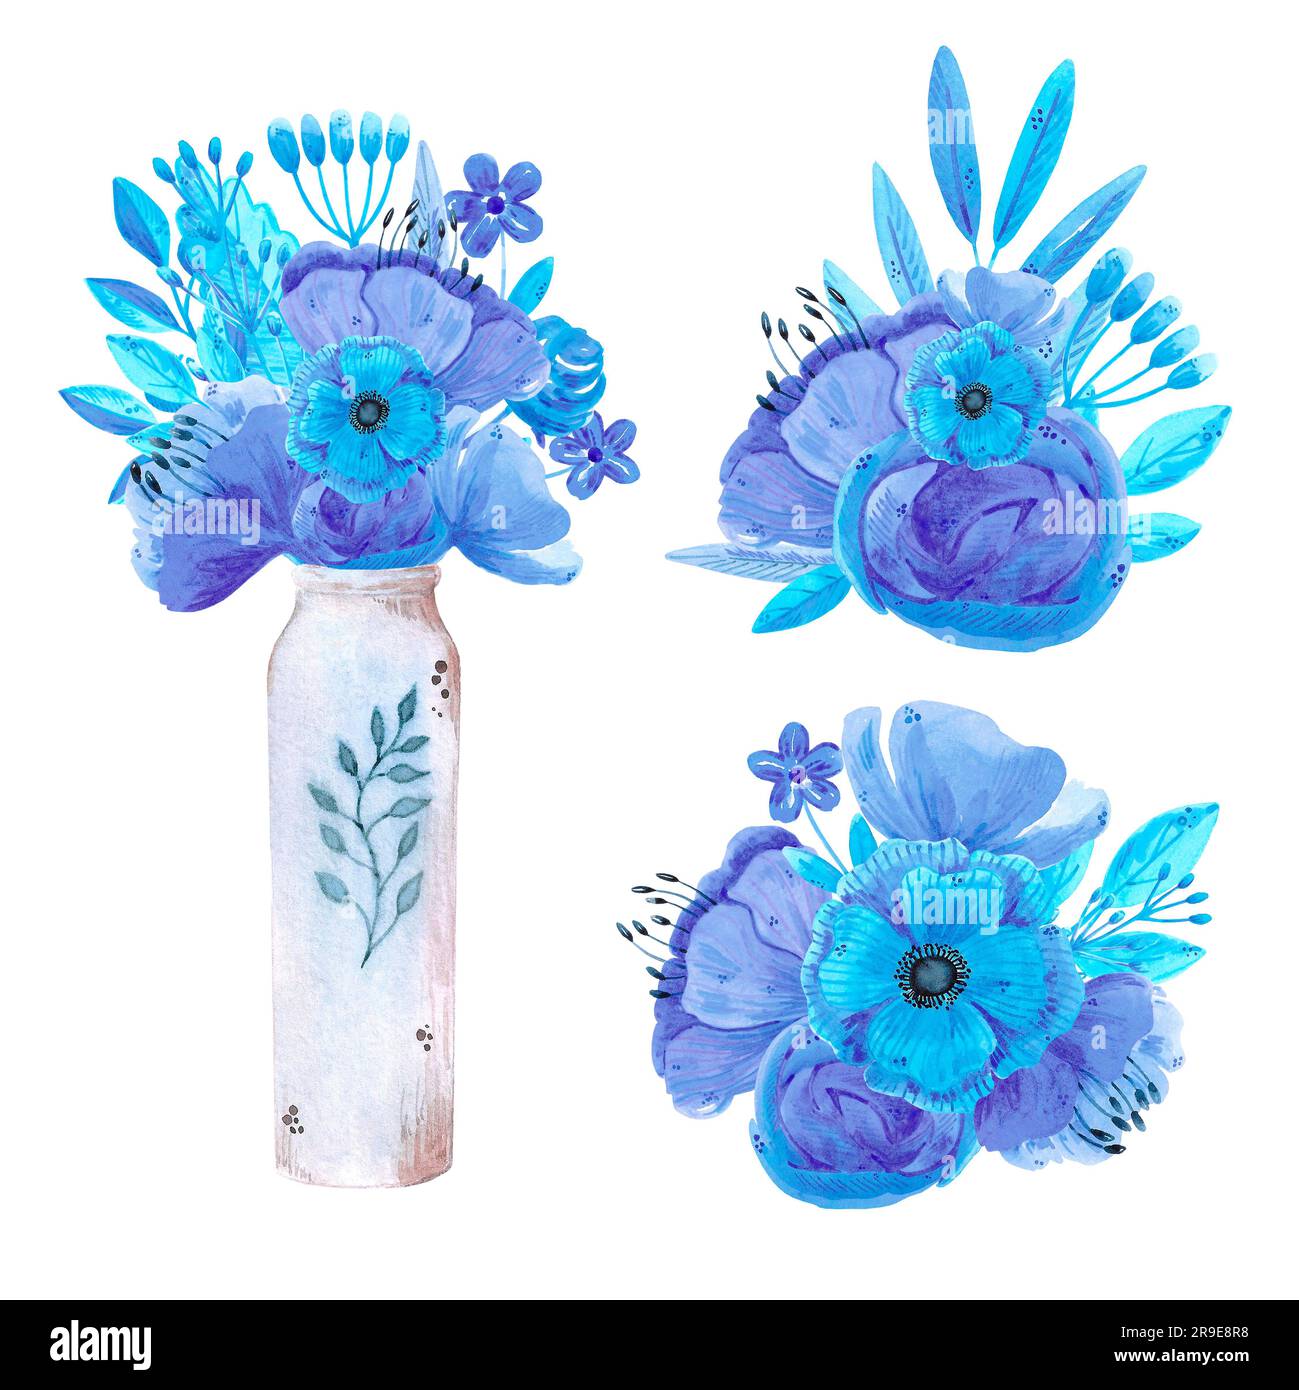 Bouquet de fleurs et de feuilles bleu d'aquarelle dessinées à la main dans un vase. Isolé sur blanc. Peut être utilisé pour les cartes, les modèles, les invitations, les étiquettes Banque D'Images